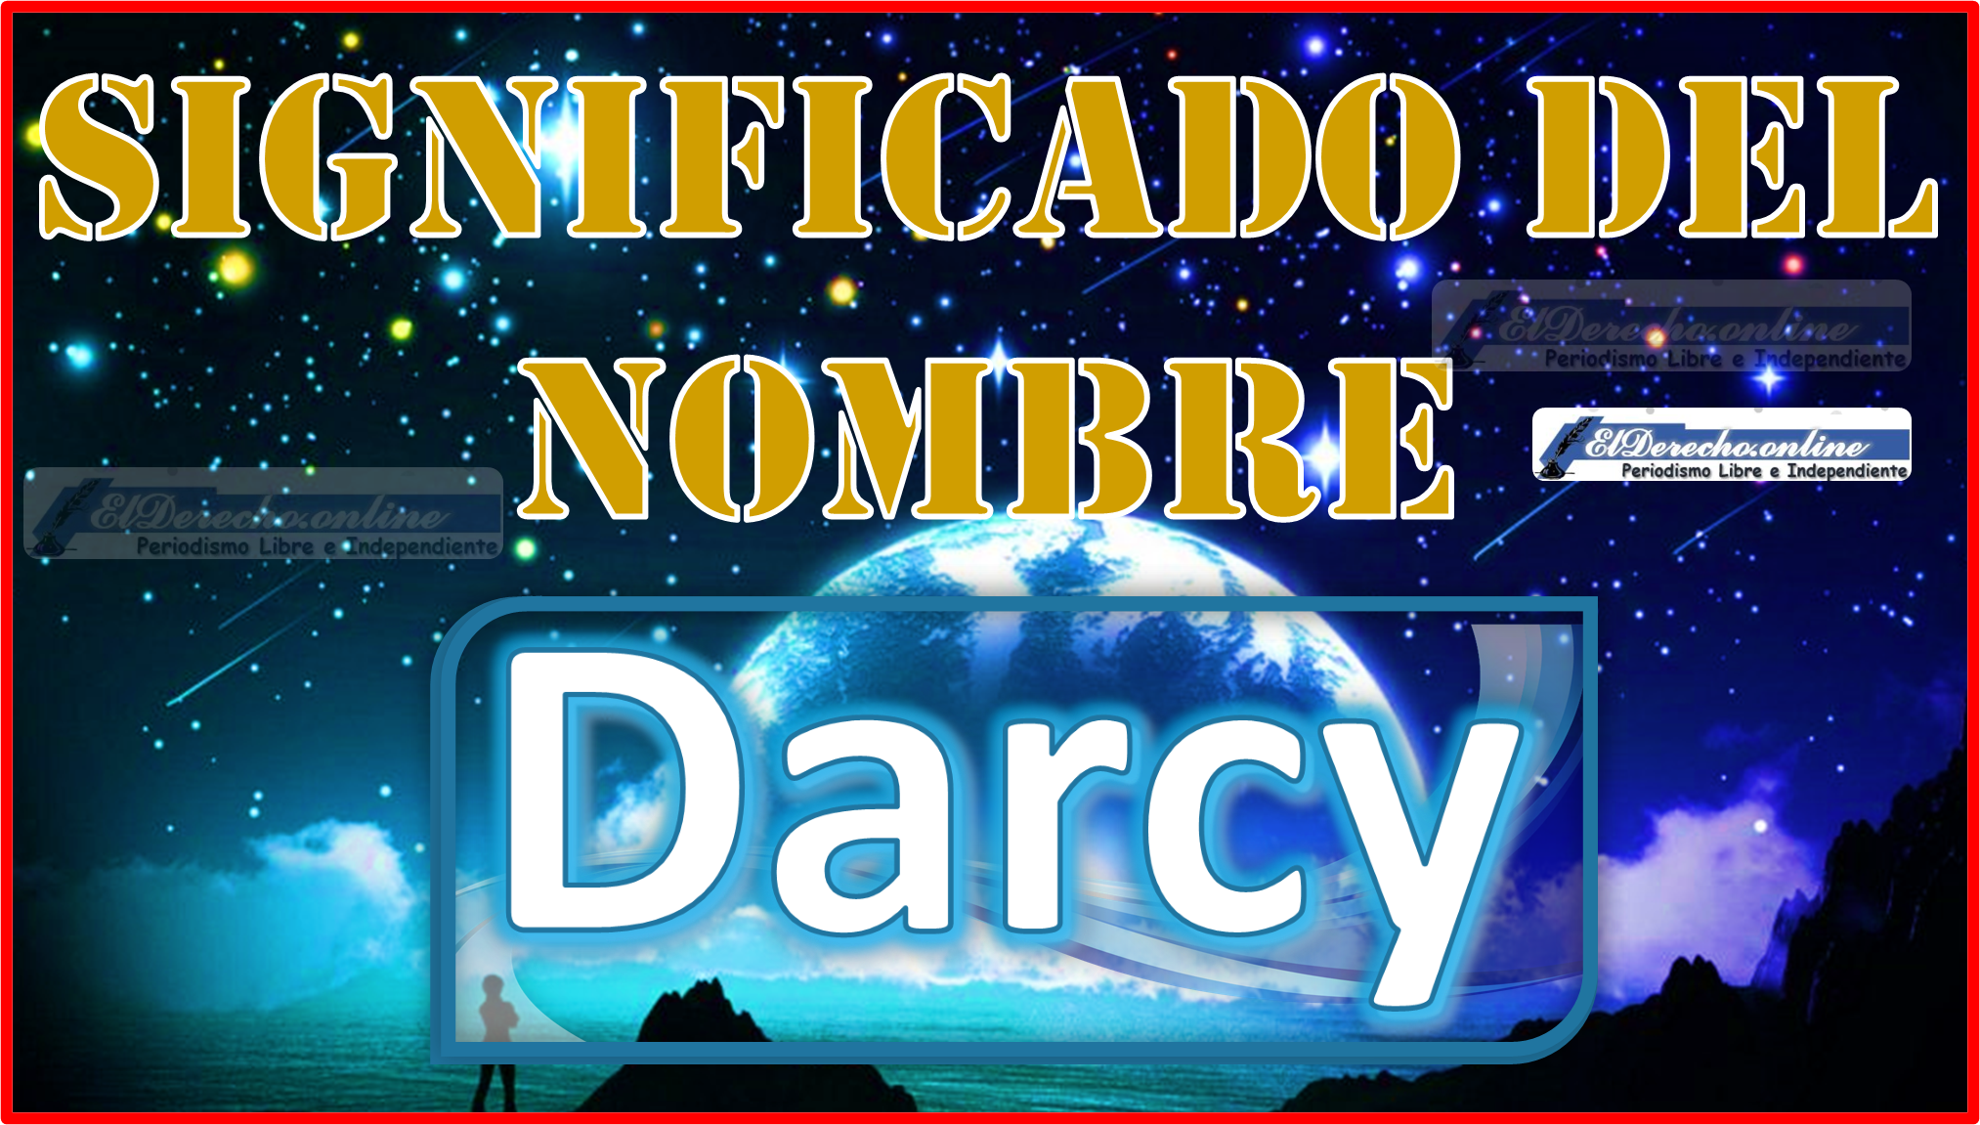 Significado del nombre Darcy, su origen y más